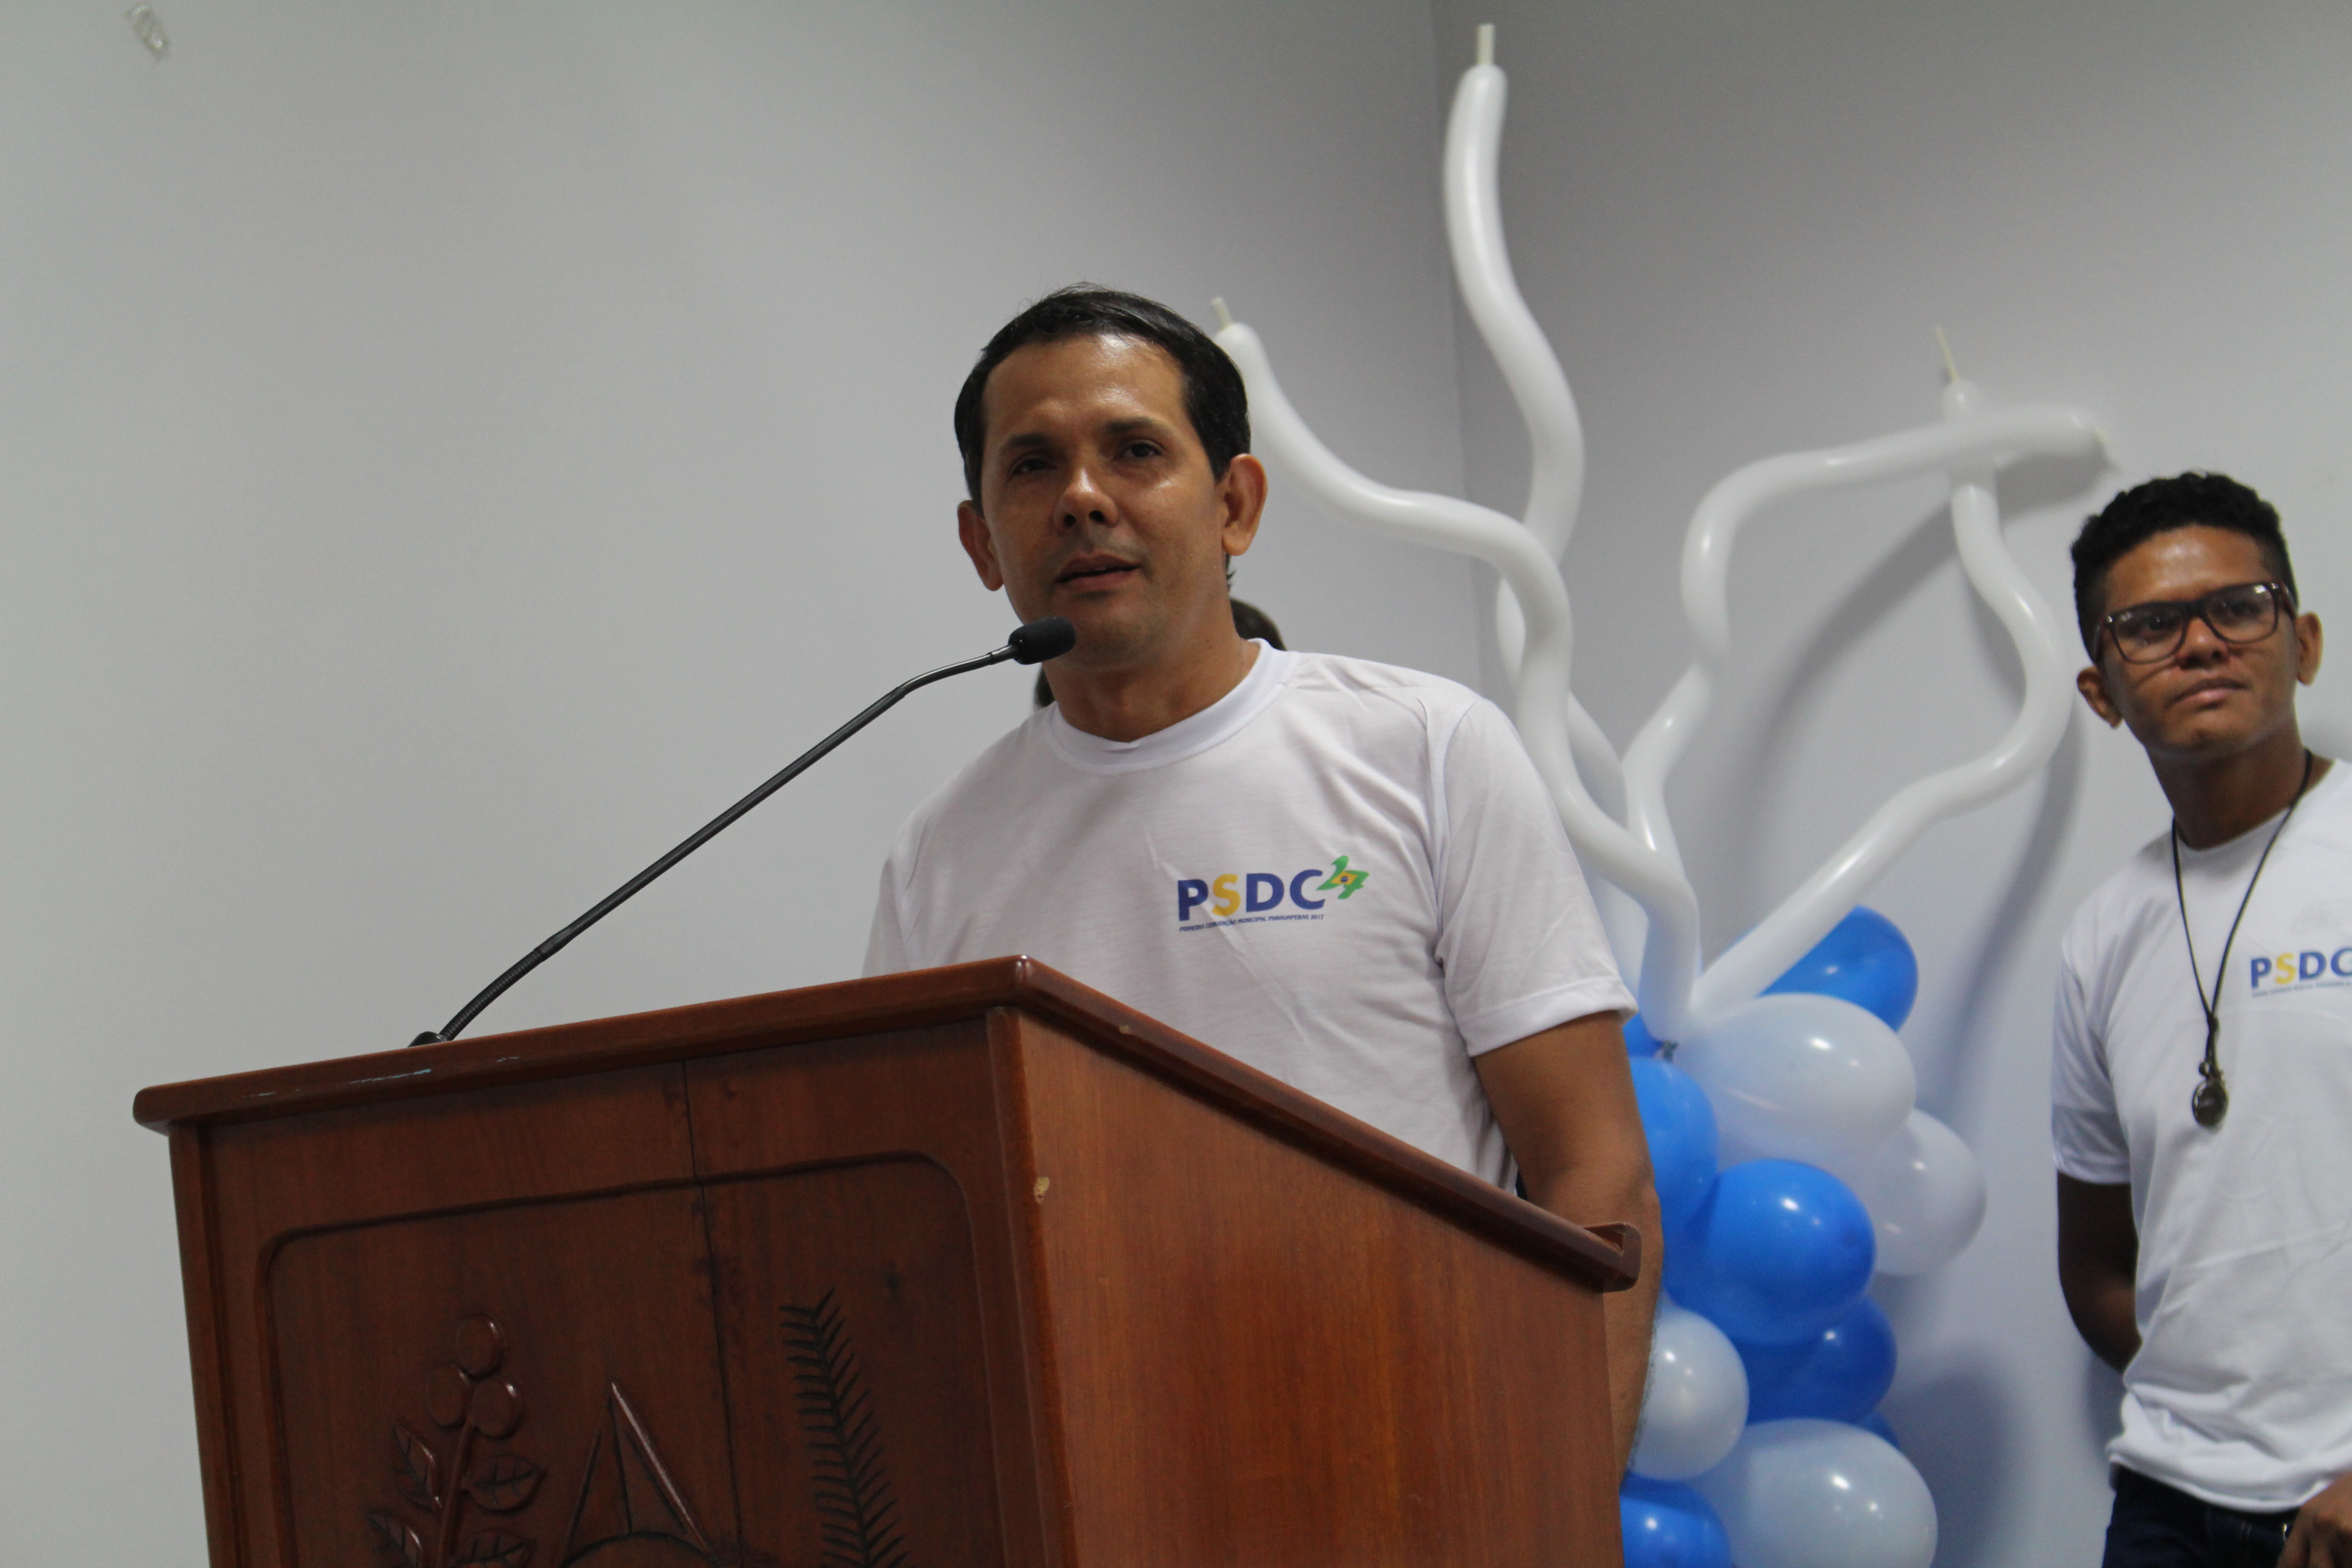  PSDC realiza convenção em Parauapebas e partido passa a ter diretório municipal